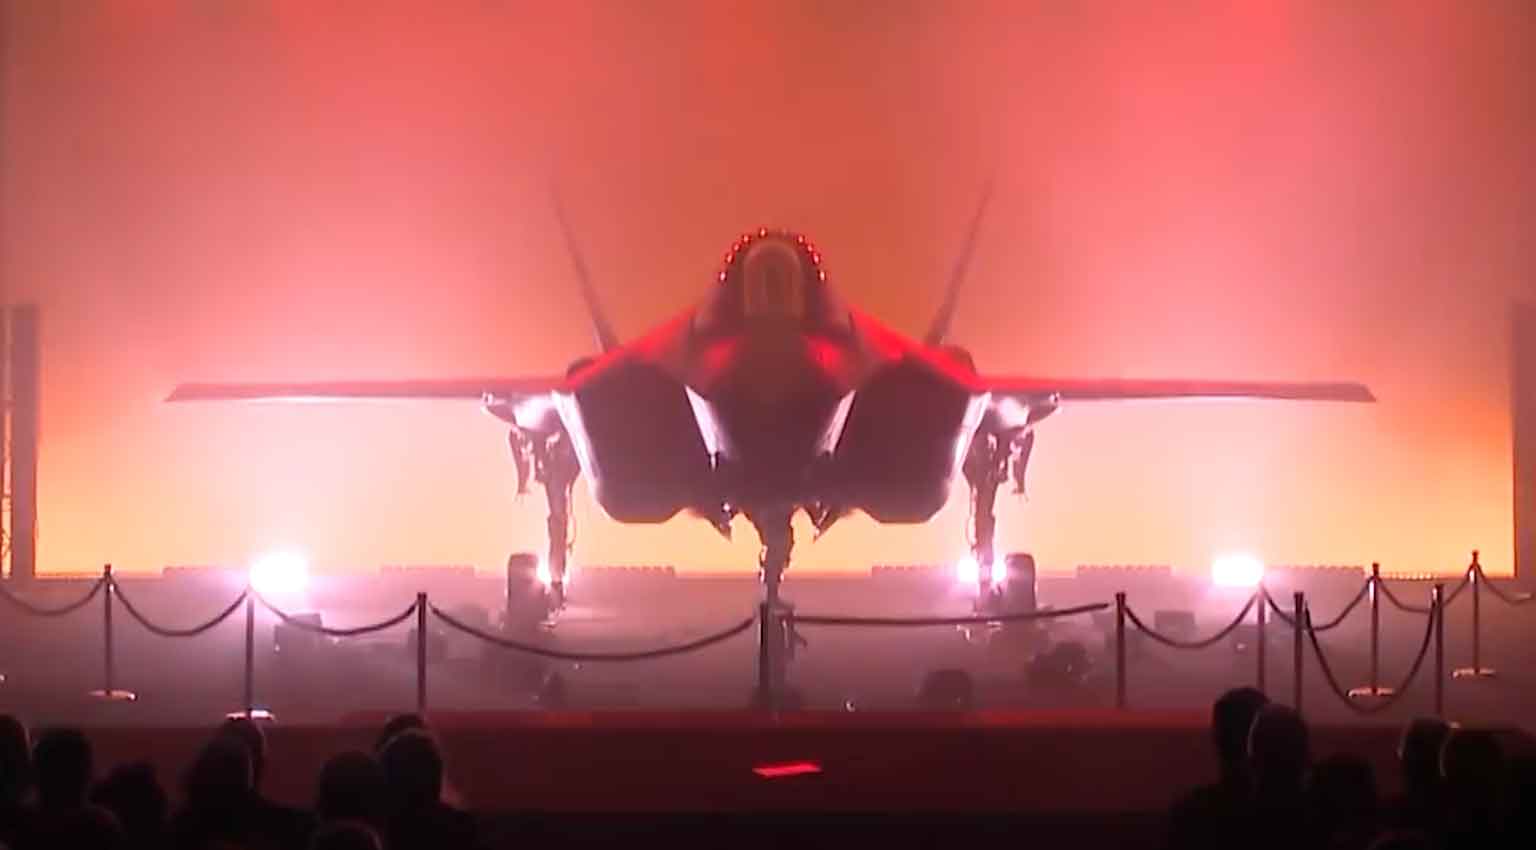 Video: Belçika'nın İlk F-35A'sı Lockheed Martin Tarafından Tanıtıldı. Fotoğraf ve Video: Instagram @lockheedmartin